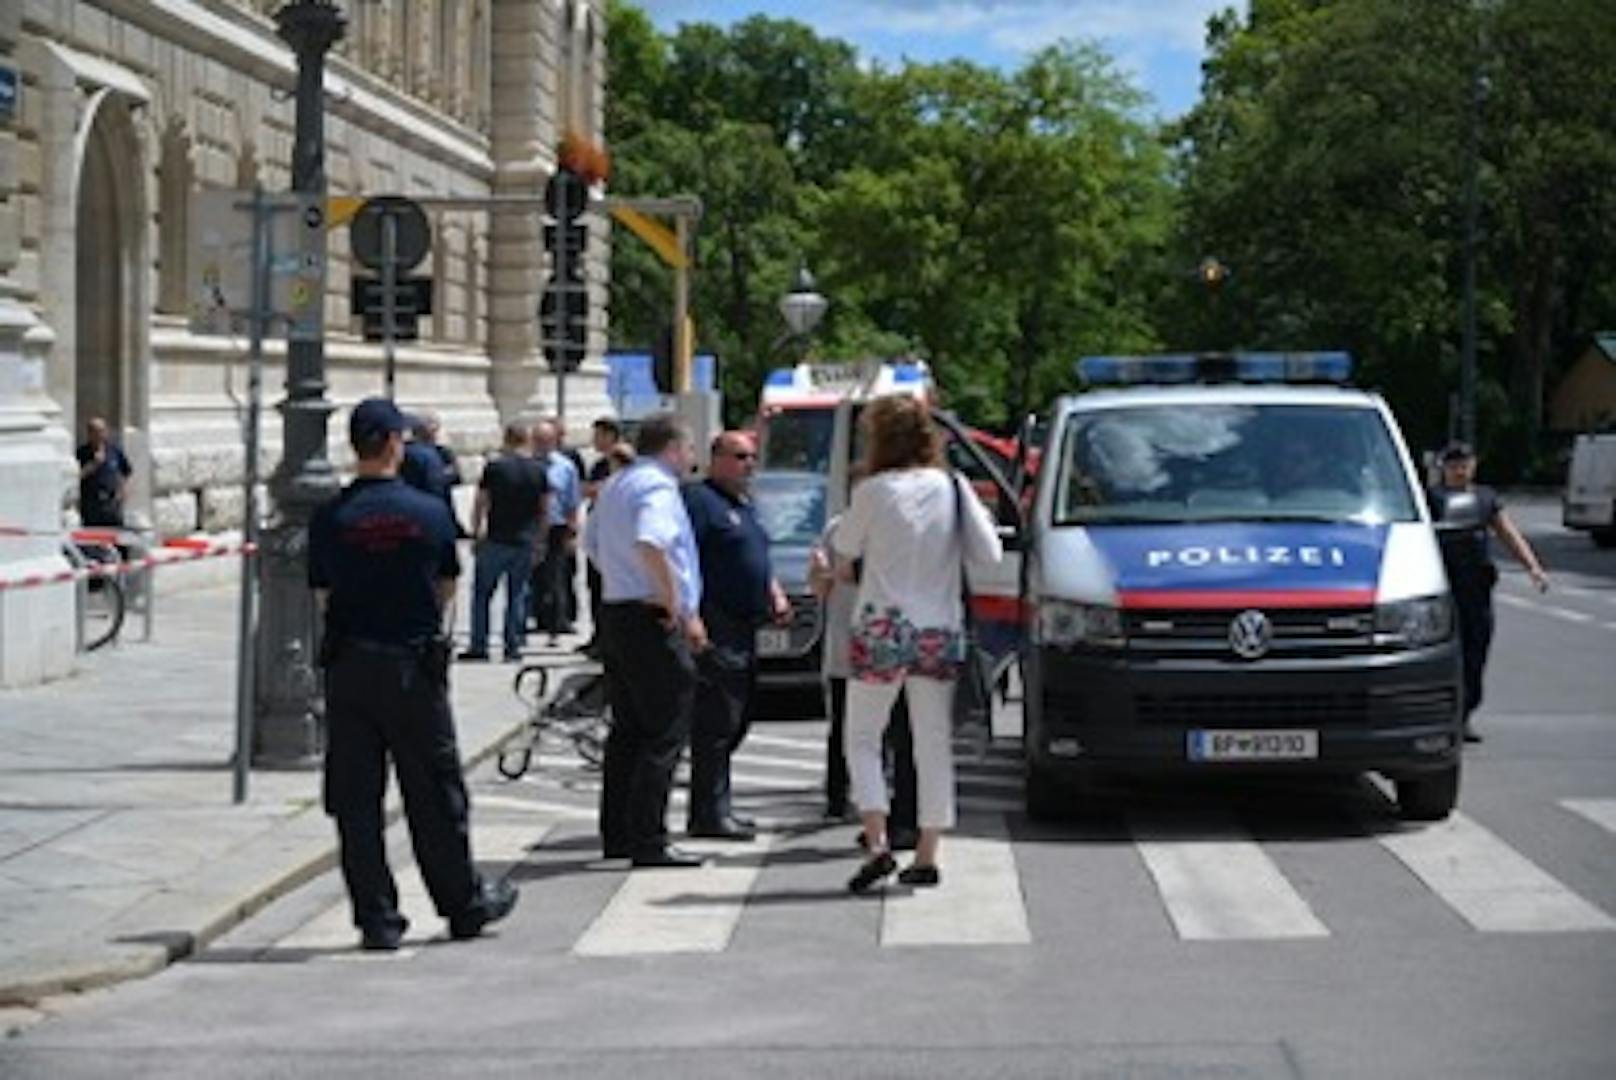 Ein Mann radelte zum Wiener Rathaus, soll dort "Allahu Akbar" gerufen haben. Die Polizei überwältigte ihn und nahm ihn fest.<br>